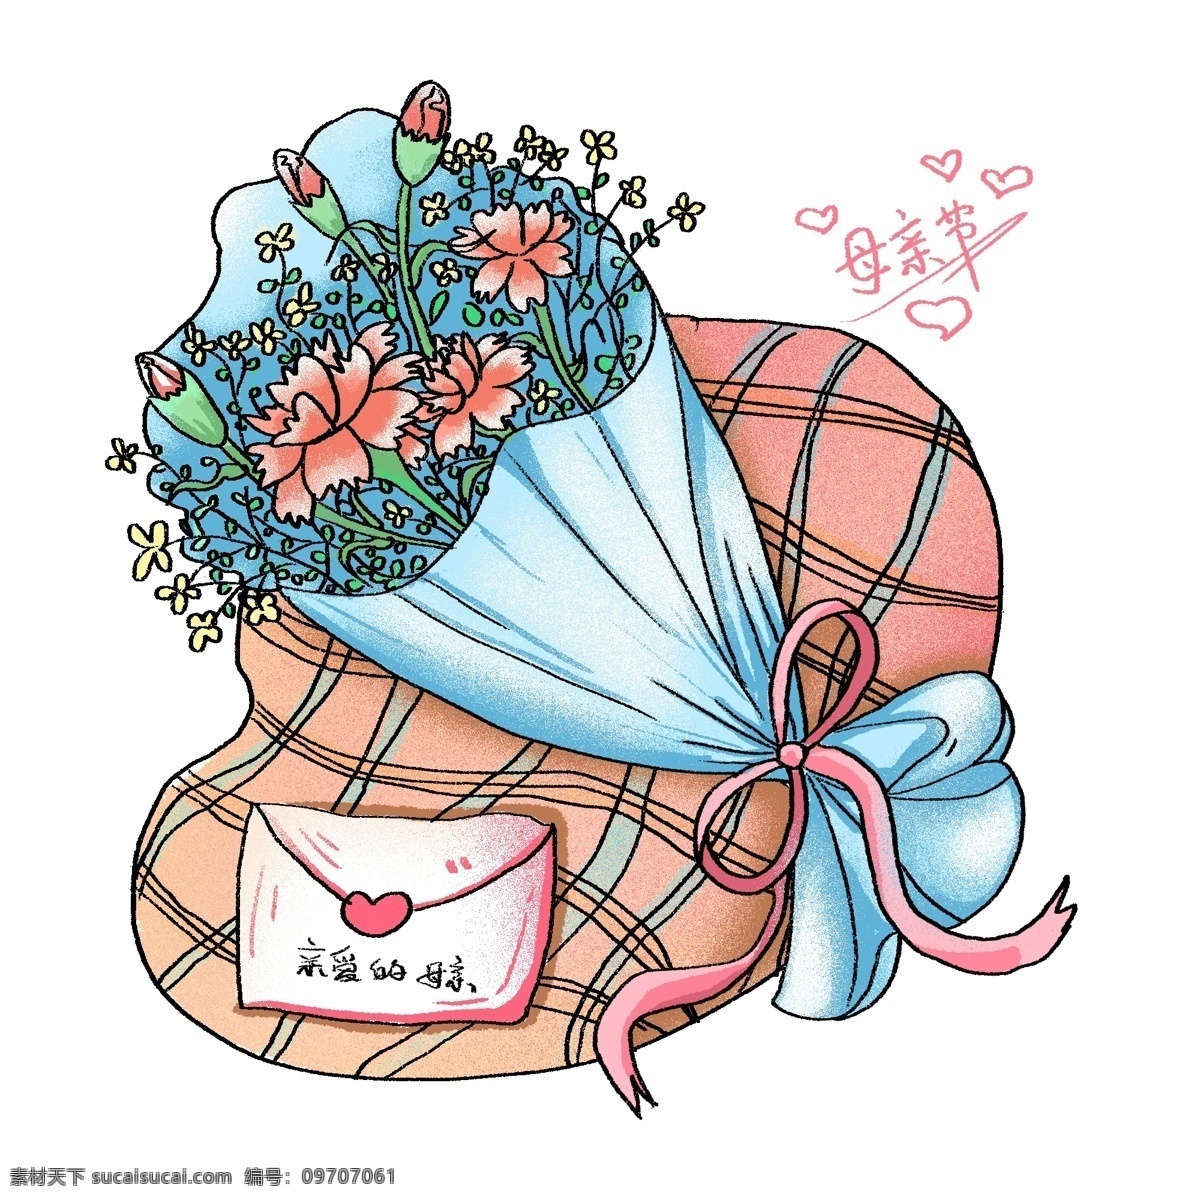 原创 手绘 母亲节 康乃馨 花束 元素 花朵 信封 礼物 小清新 可爱 肌理噪点